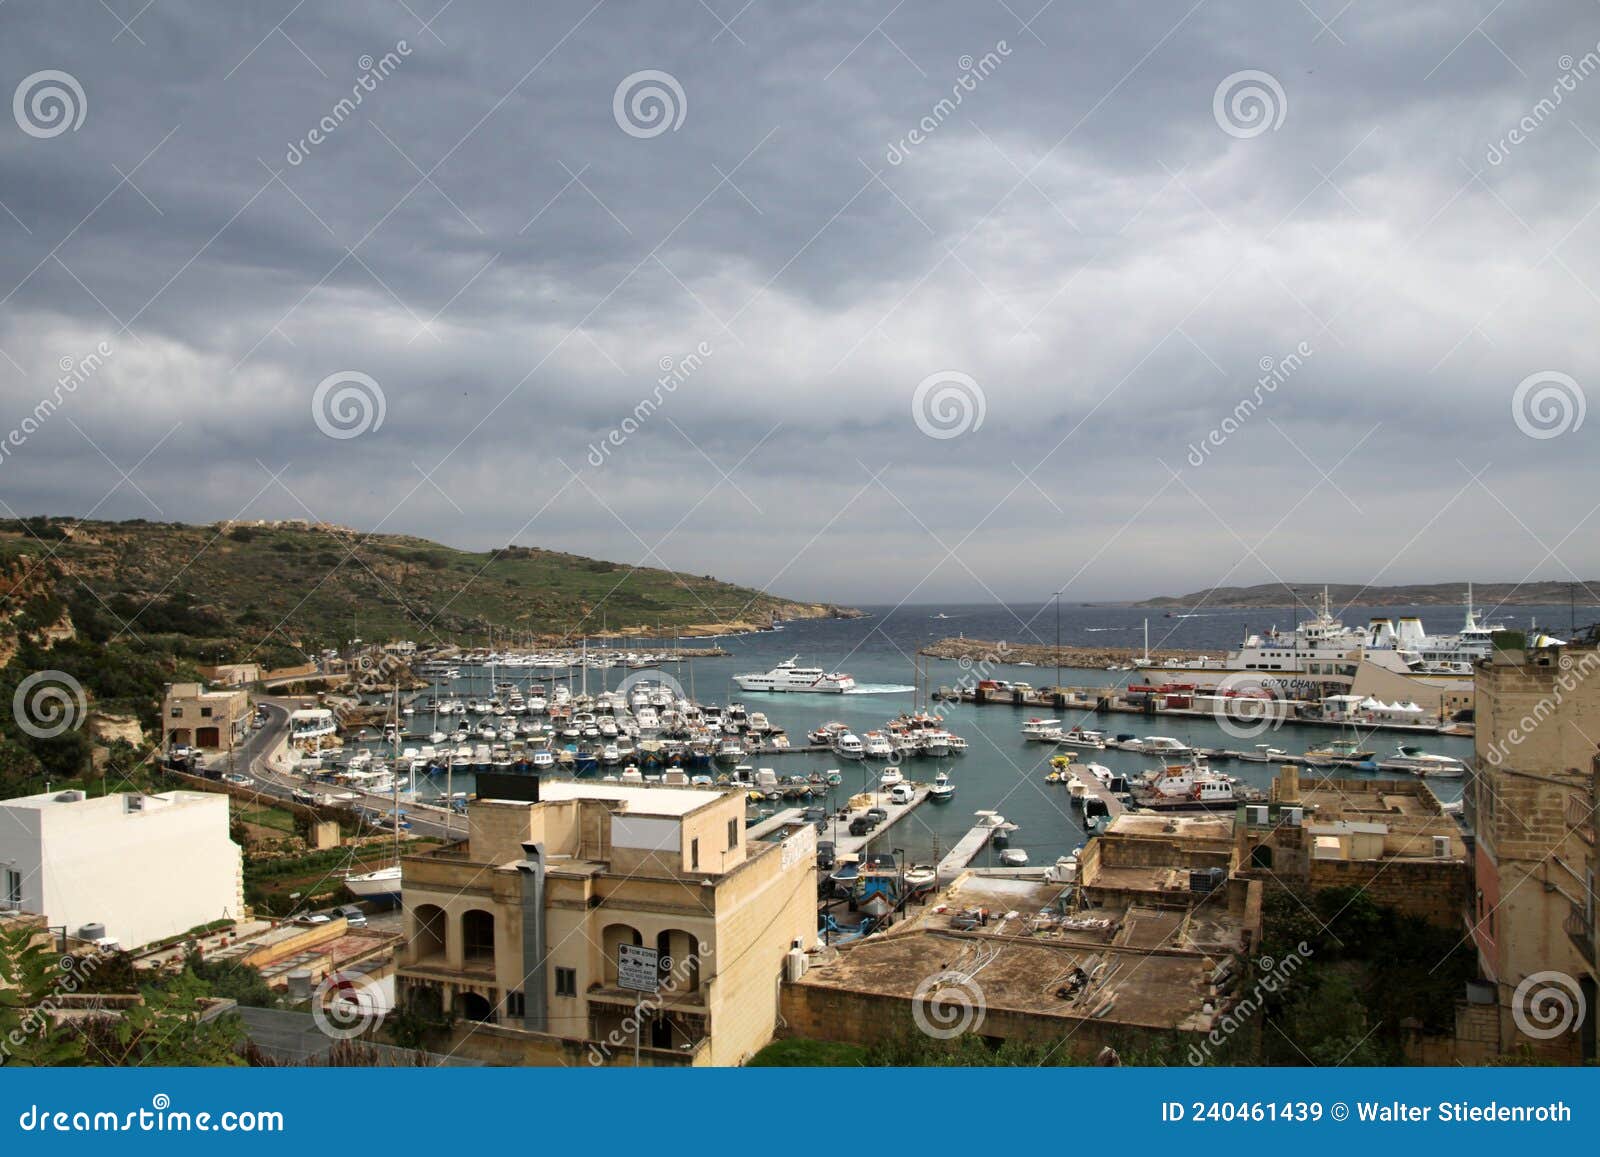 mÃÂ¡arr ferry terminal on the island of gozo, malta